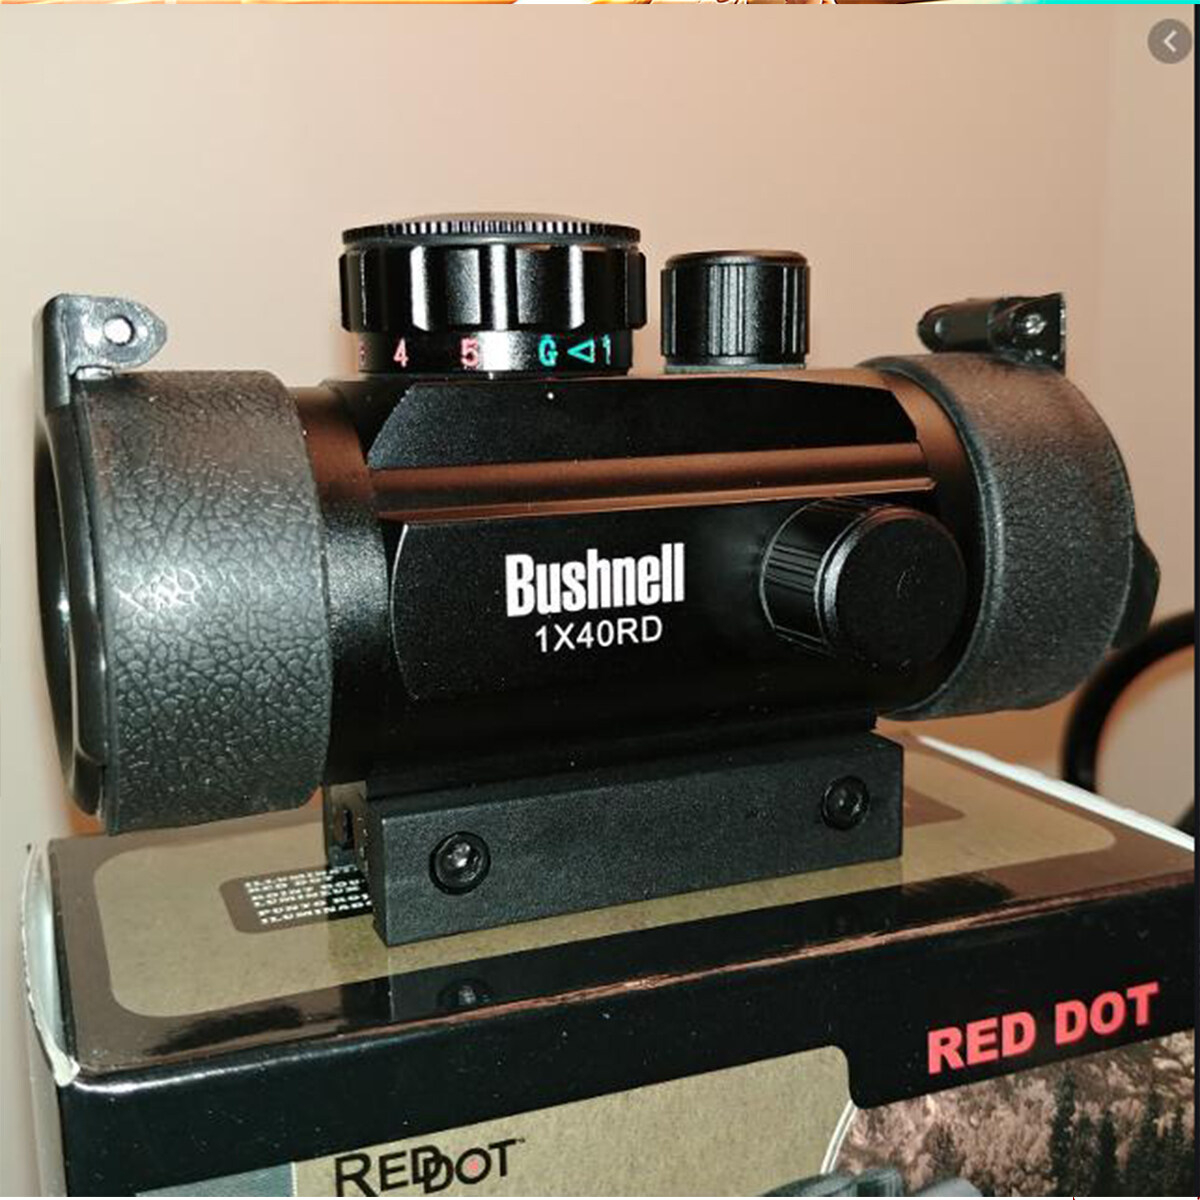 กล้อง Reddot Bushnell 1x40rd รุ่นล่าสุด ฝากระดก กระจกโฮโลแกรมสี่จุดเปลี่ยน Jinming สายตารุ่นที่ 8 จุดสีแดง Rednot Bushnell 1x40rd Reddot Camera, Four-Point Holographic Bezel, Change Jinming Eyesight, 8th Generation, Red. 